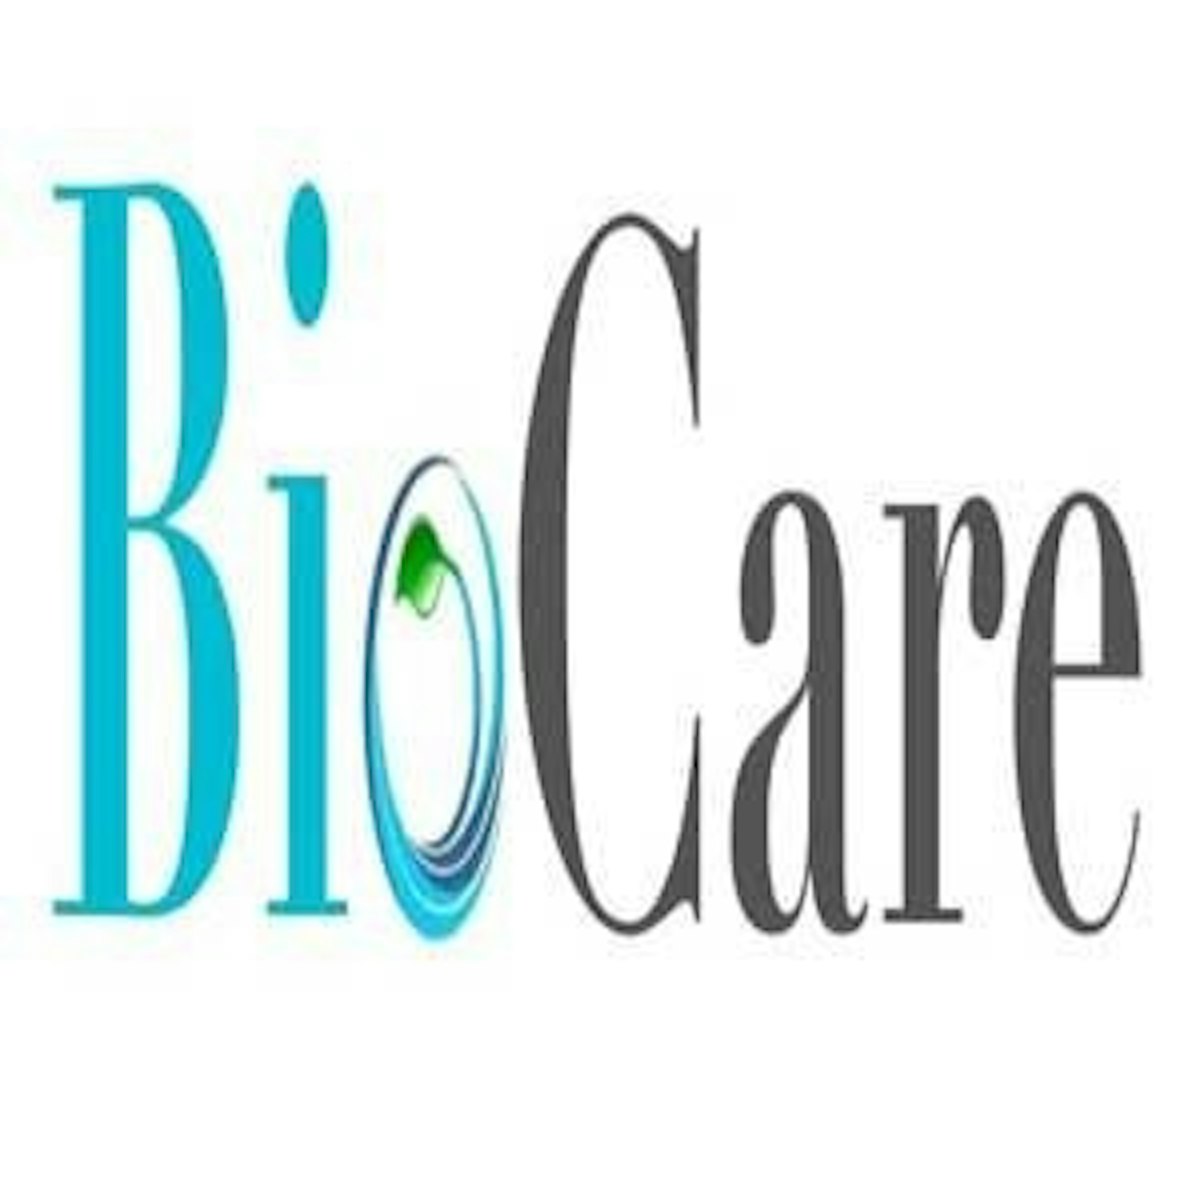 the bio care